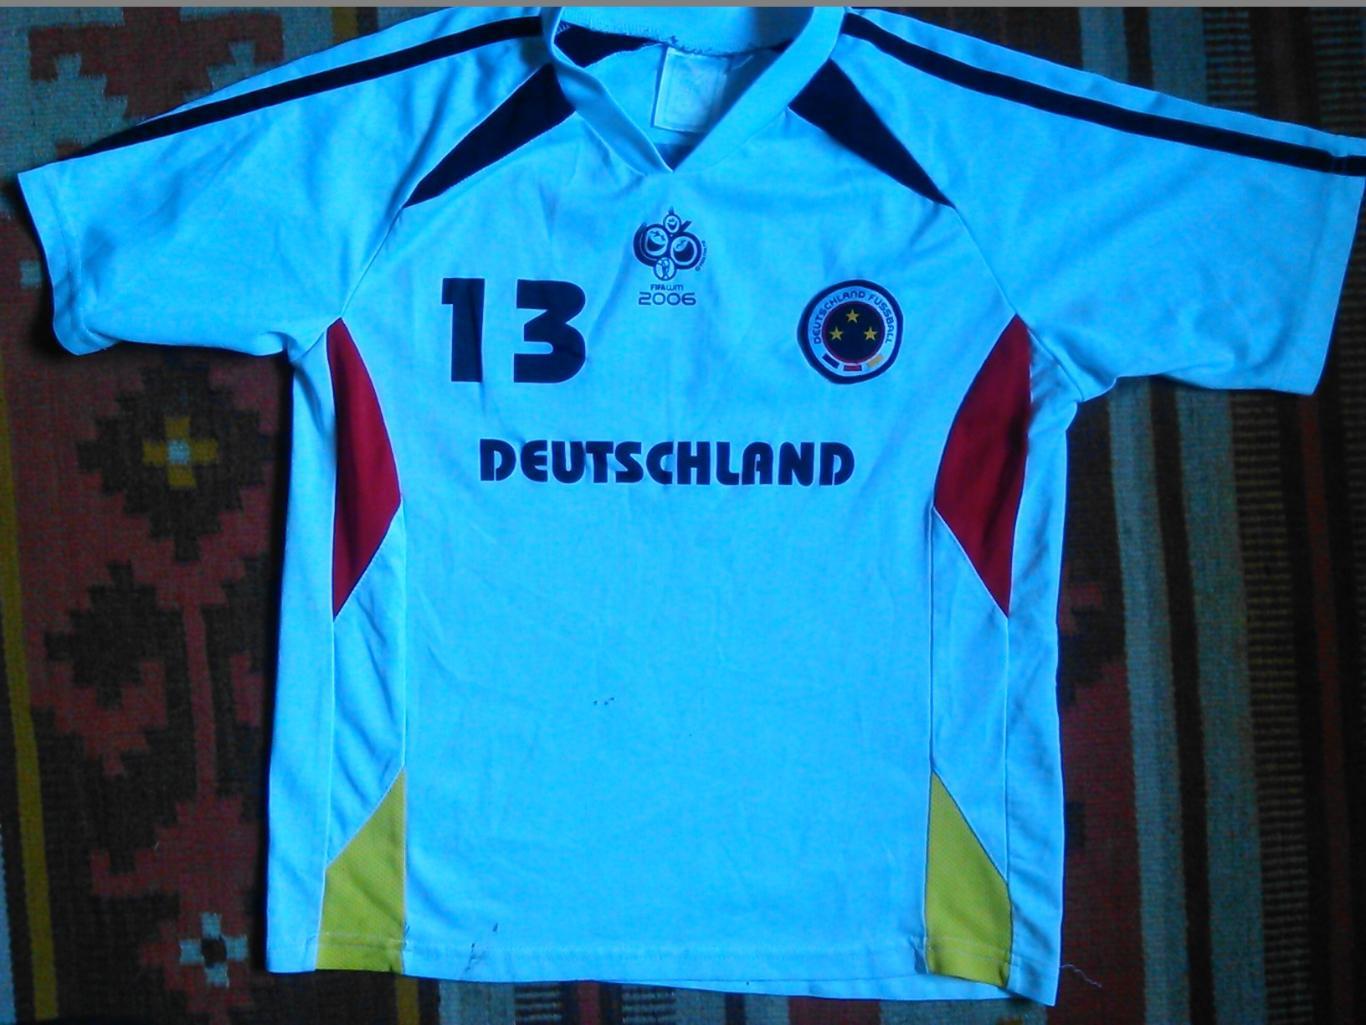 футболка сборной Германии №13 к Чемпионату мира 2006! Оптом скидки до 49%!